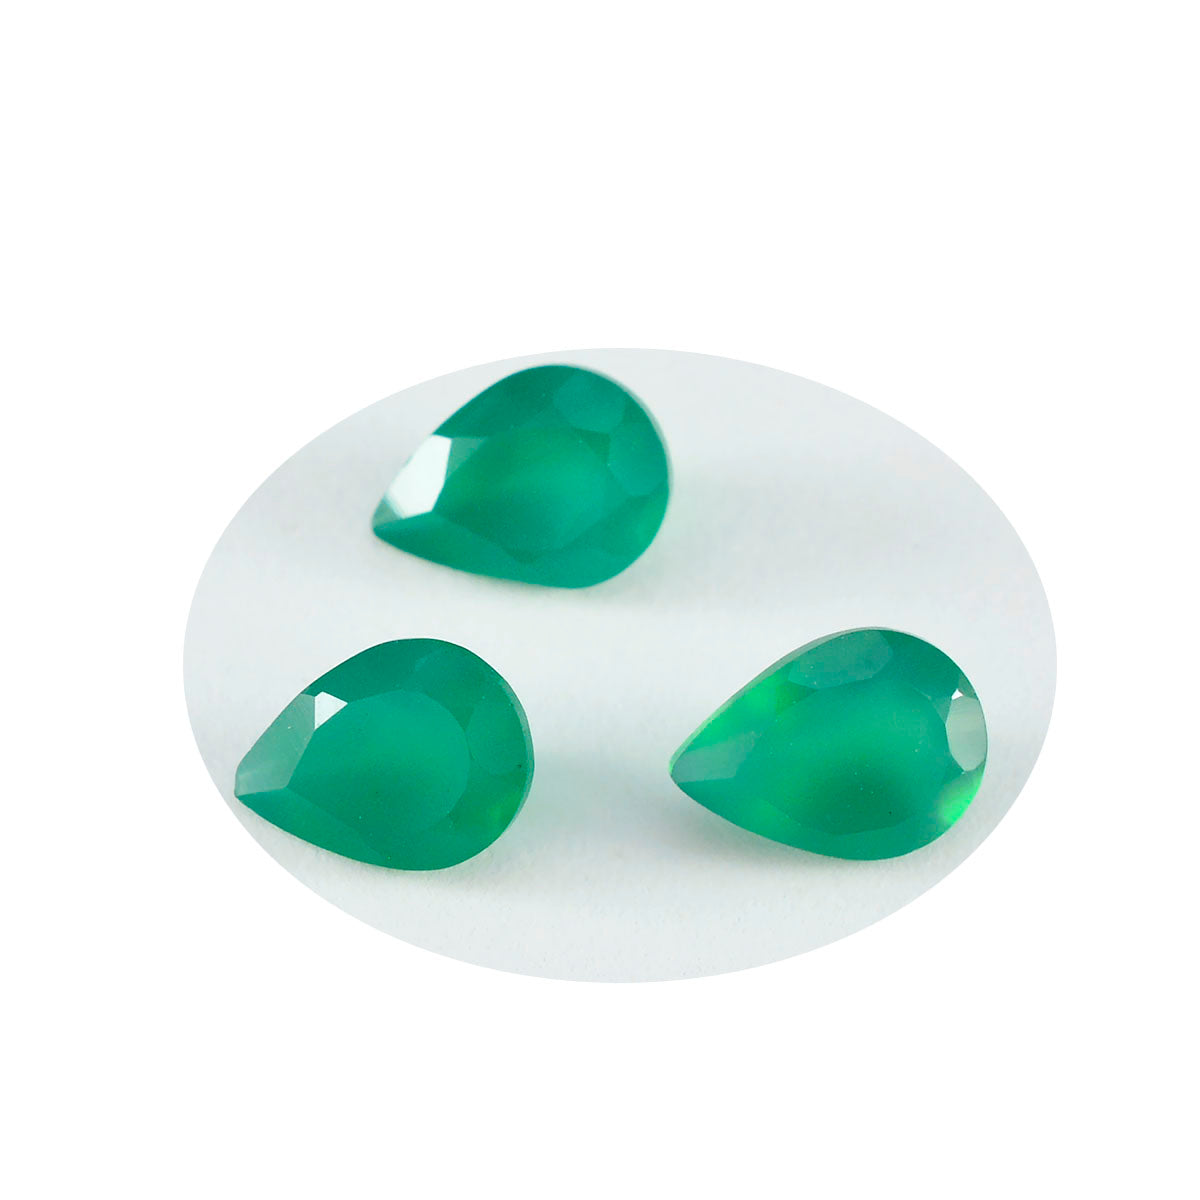 Riyogems 1 pieza de ónix verde Natural facetado 7X14mm forma de pera piedra de calidad Linda